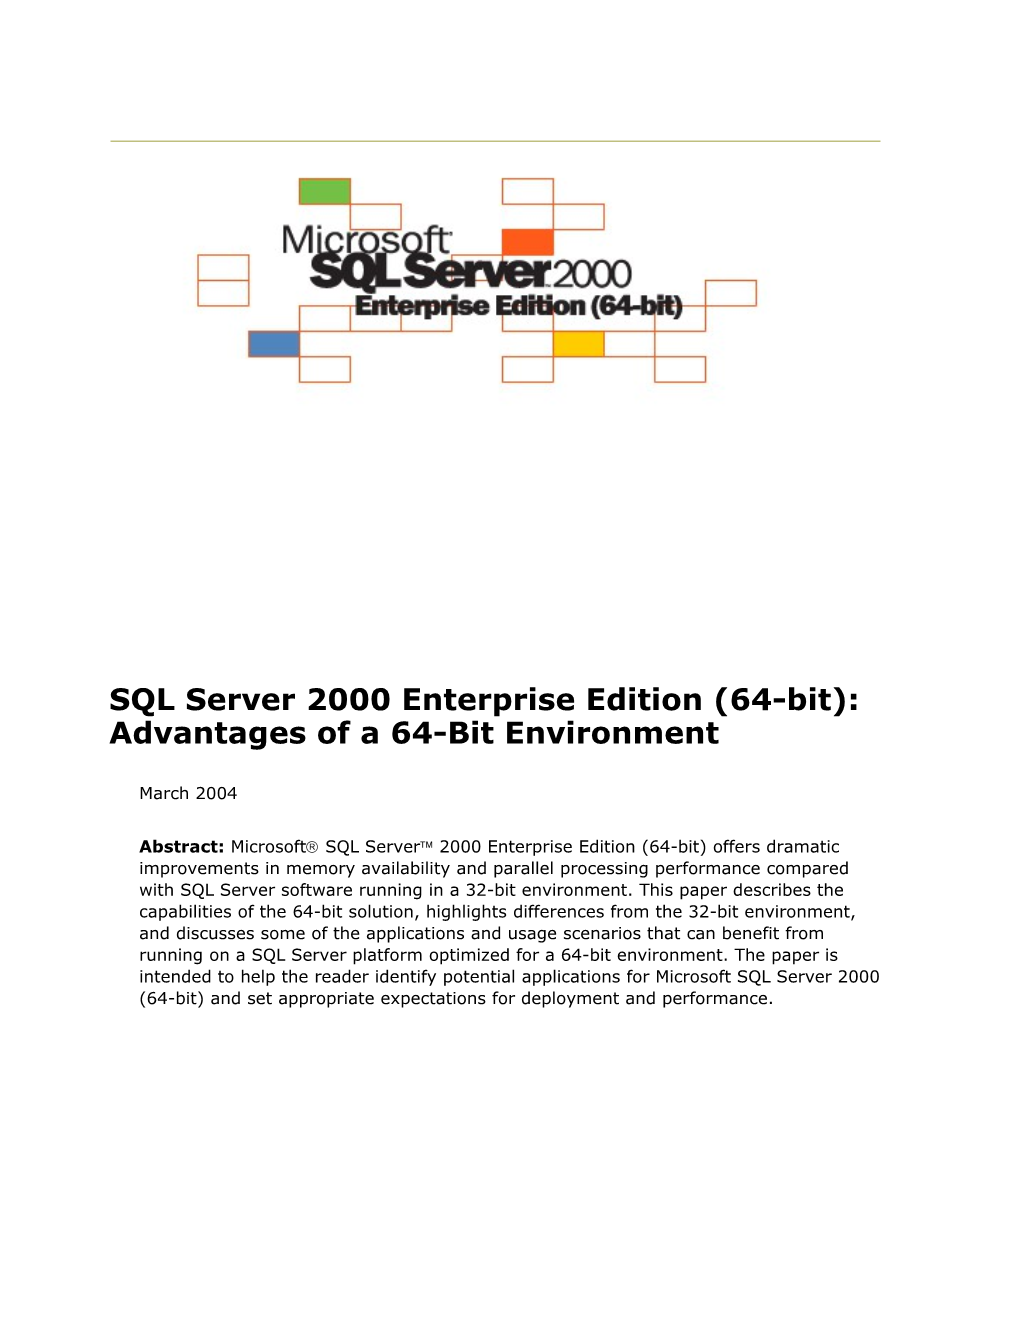 SQL Server 2000 Enterprise Edition (64-Bit): Advantagesof a 64-Bit Environment